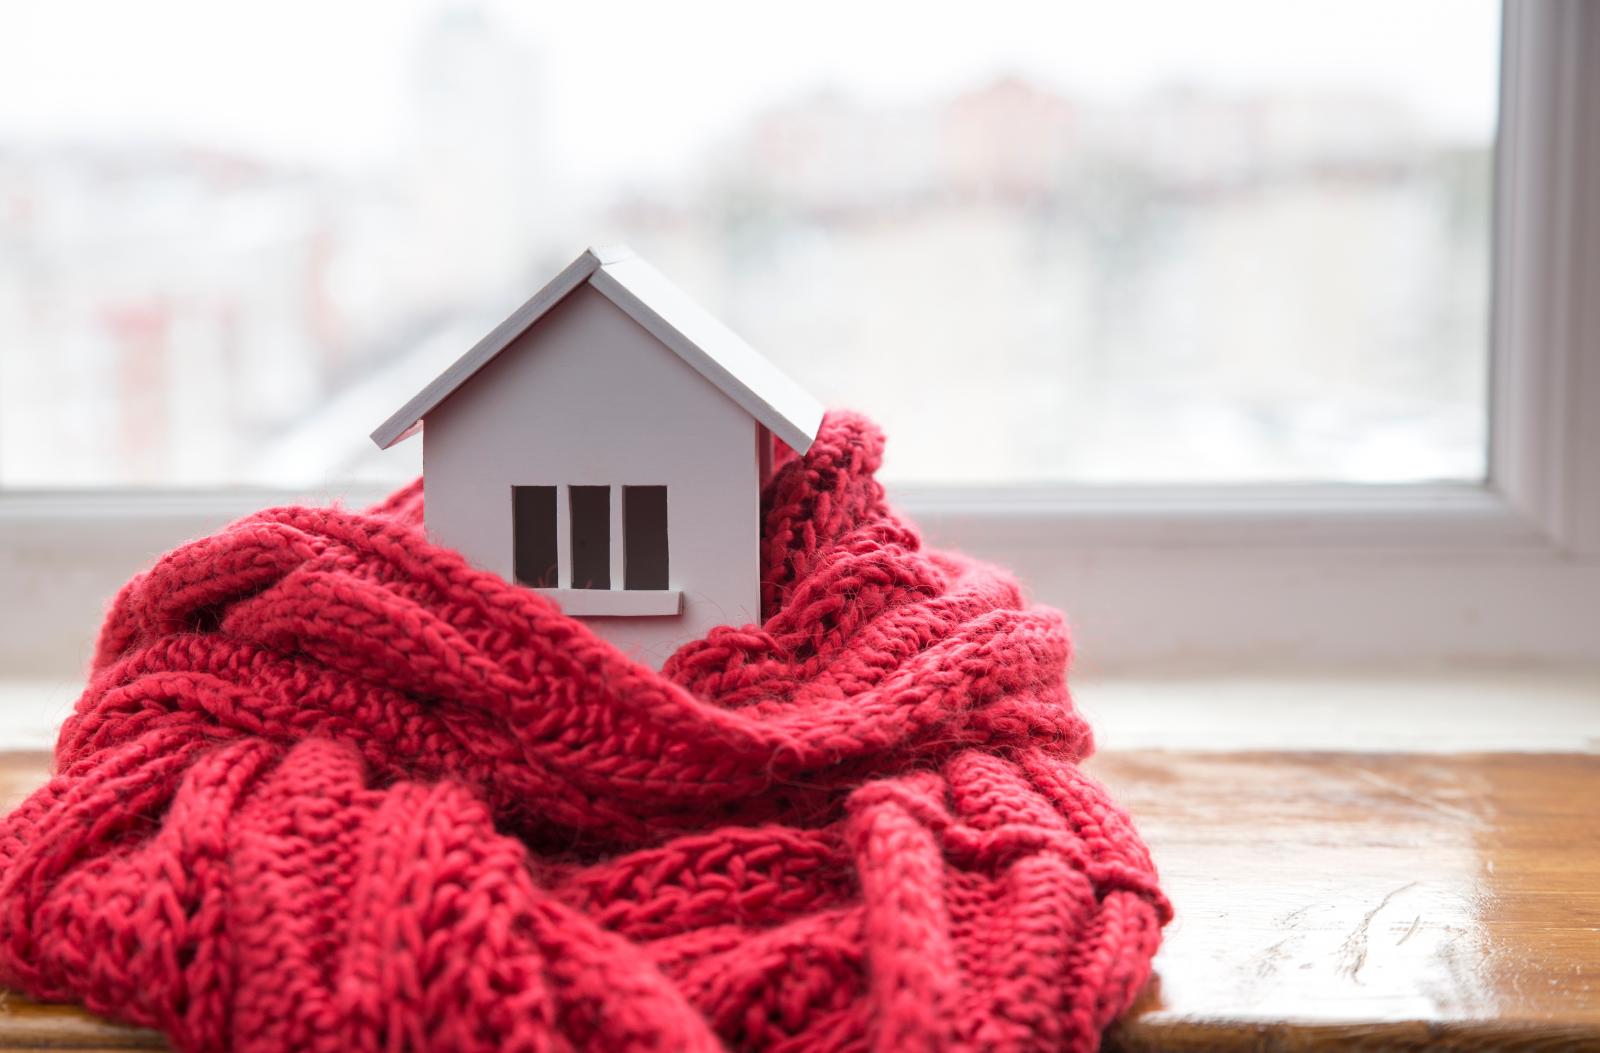 Giải pháp giúp nhà trở nên ấm hơn và tiết kiệm được điện năng khi vào mùa lạnh